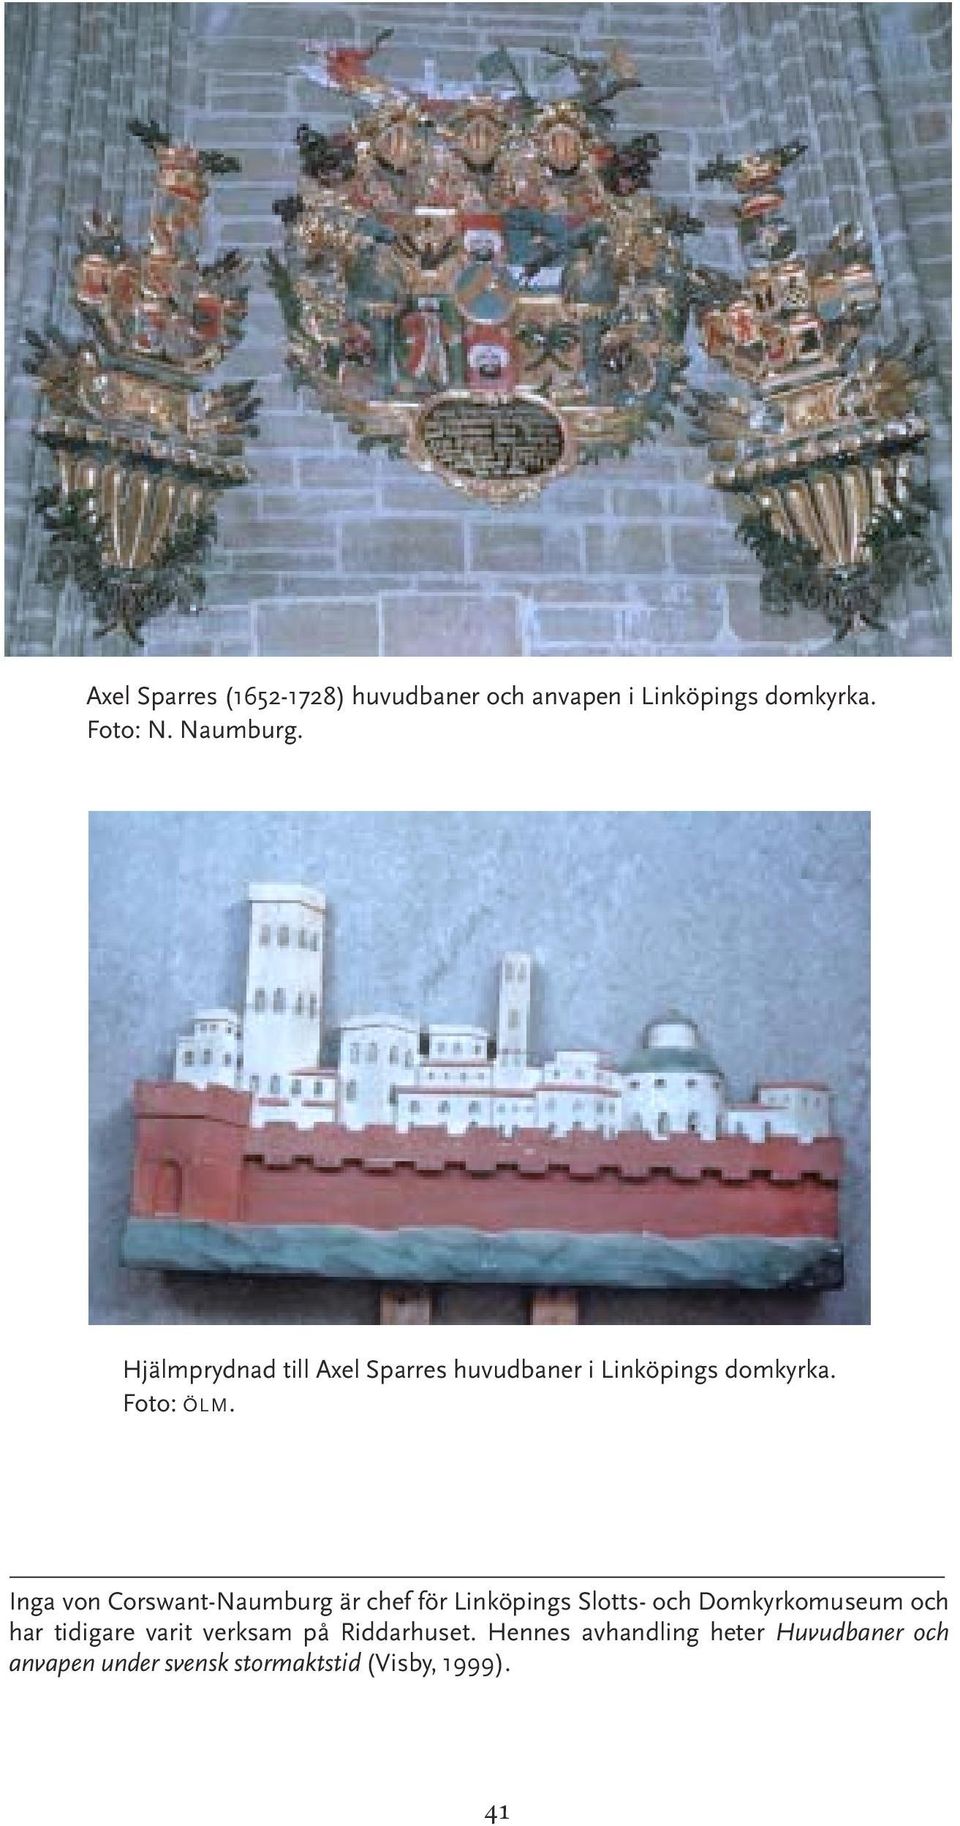 Inga von Corswant-Naumburg är chef för Linköpings Slotts- och Domkyrkomuseum och har tidigare